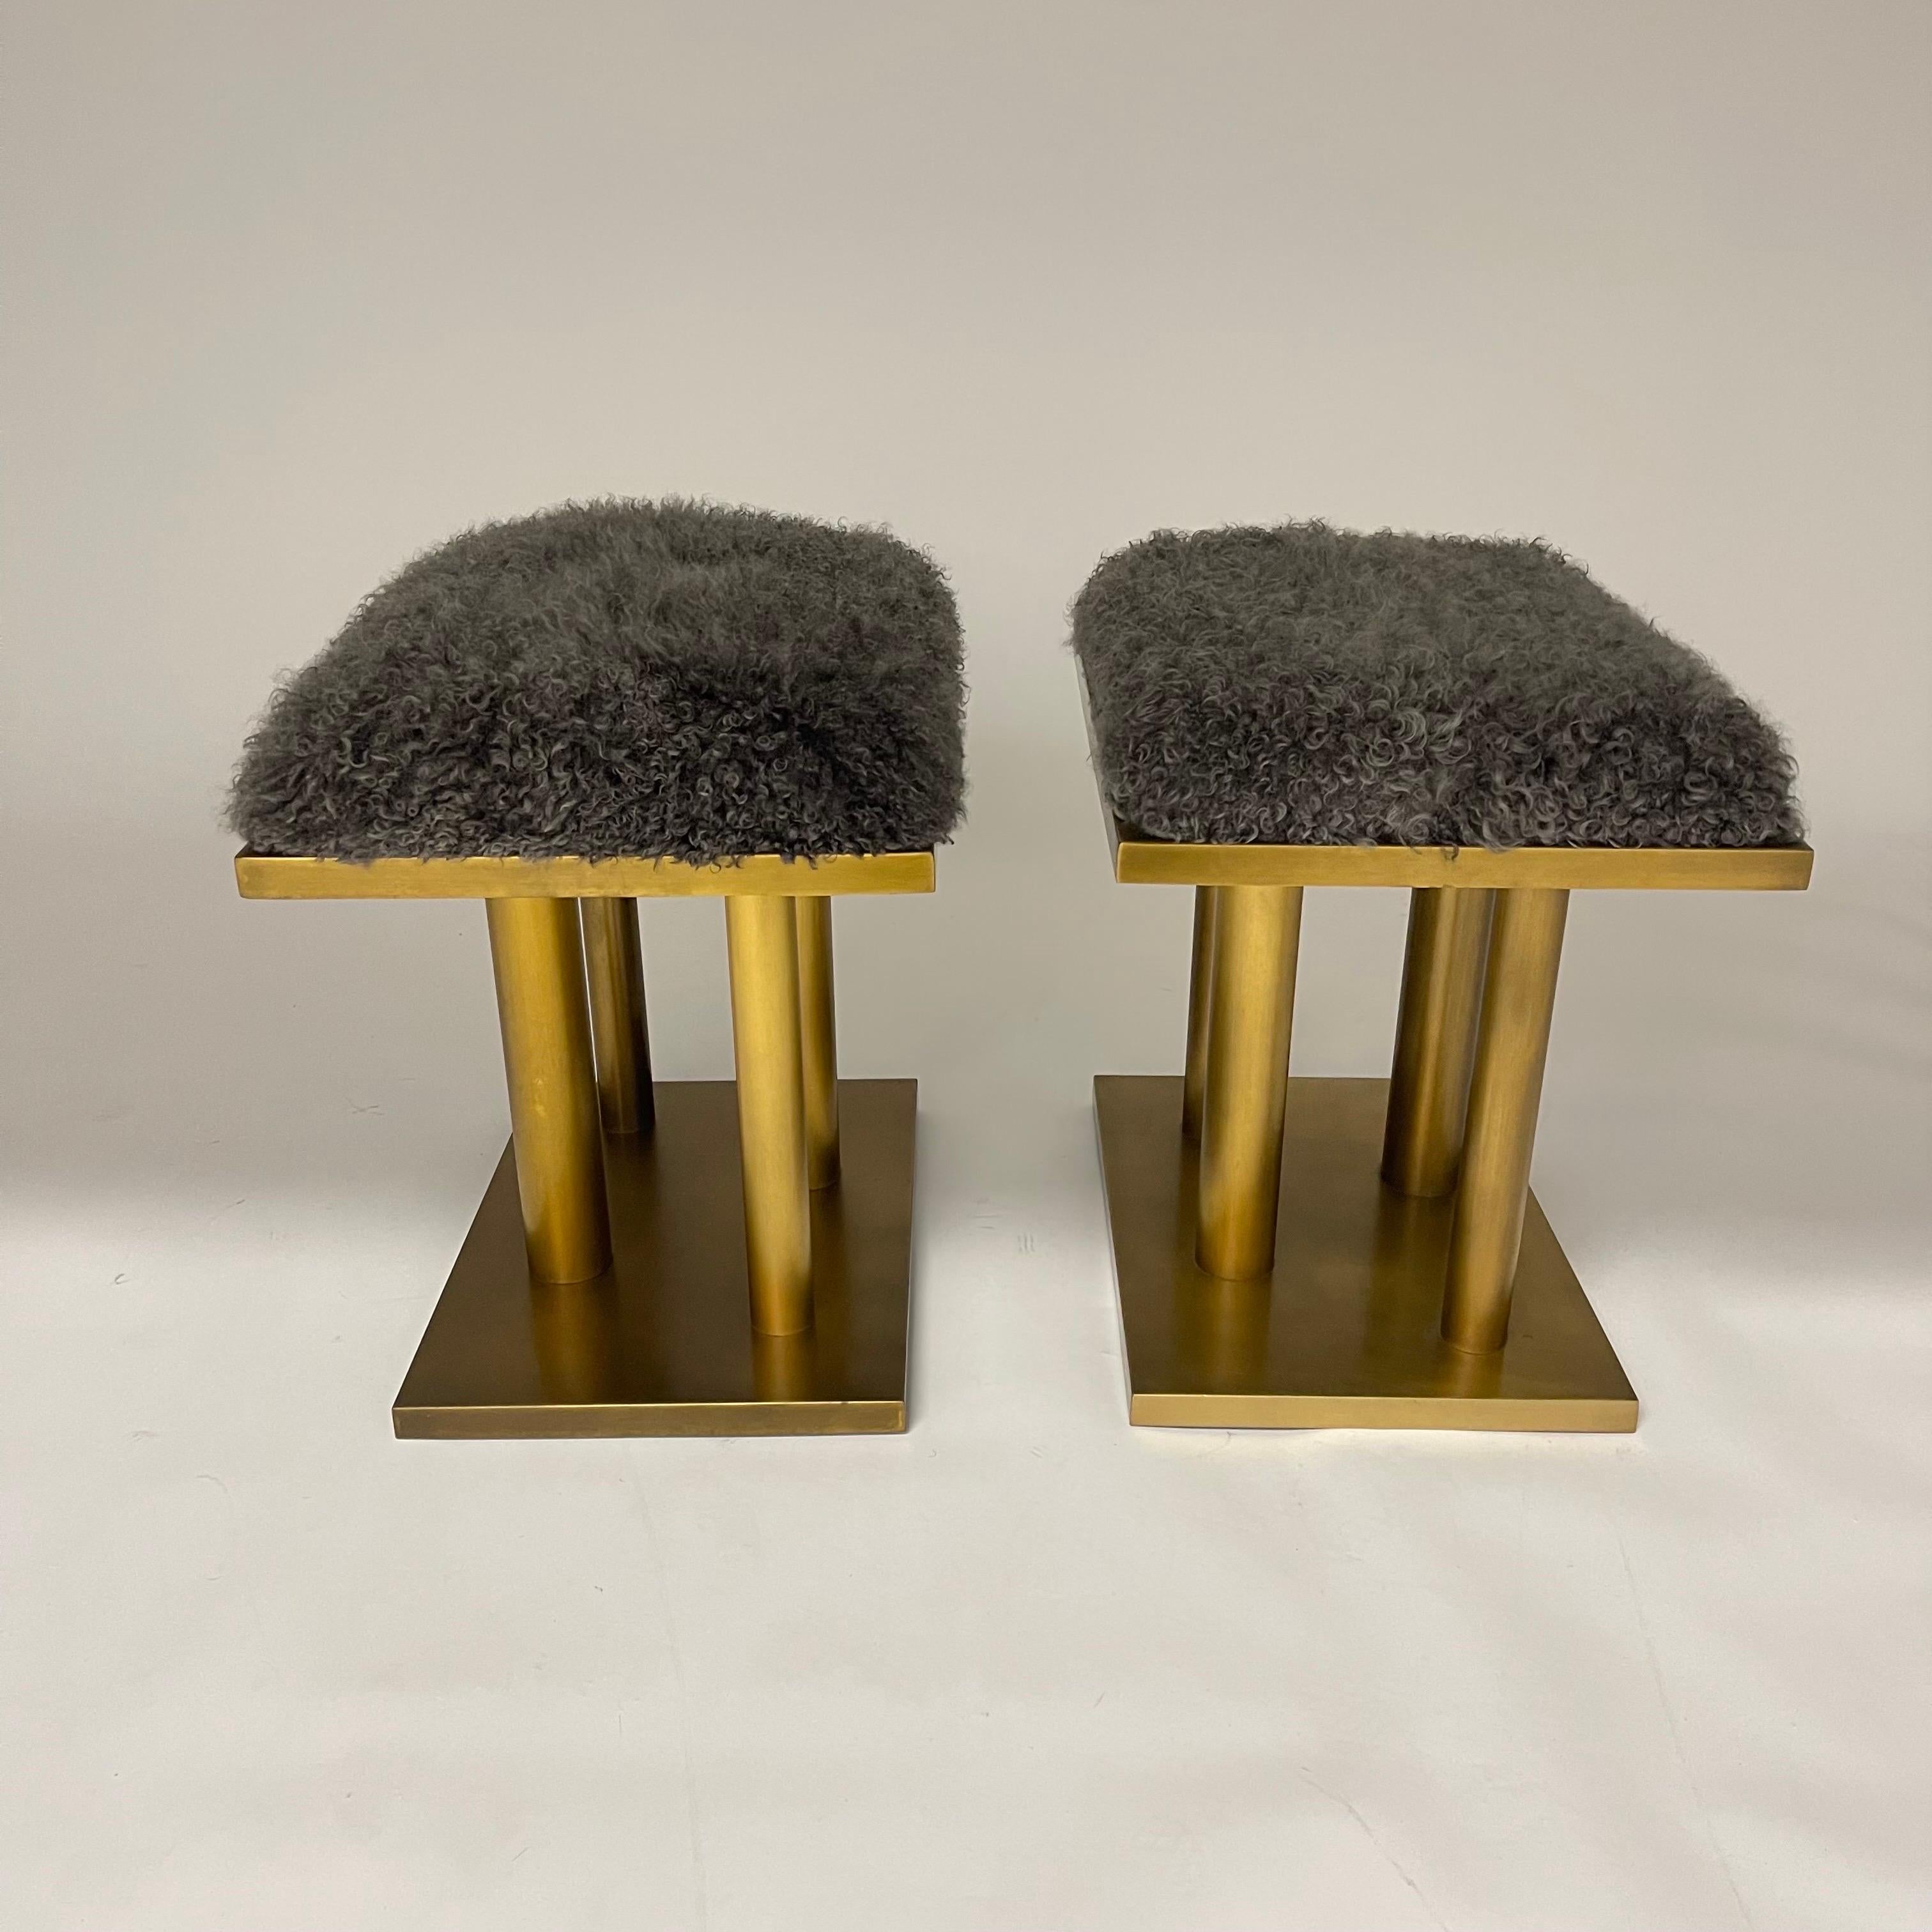 Zwei atemberaubende Hocker oder Ottomane mit schwerem bronzefarben patiniertem Gestell und gepolsterten Sitzen aus grauem mongolischem Lammfell mit verstellbaren Füßen.  Entworfen von Kelly Wearstler, die die Schilder beibehält. USA 2015